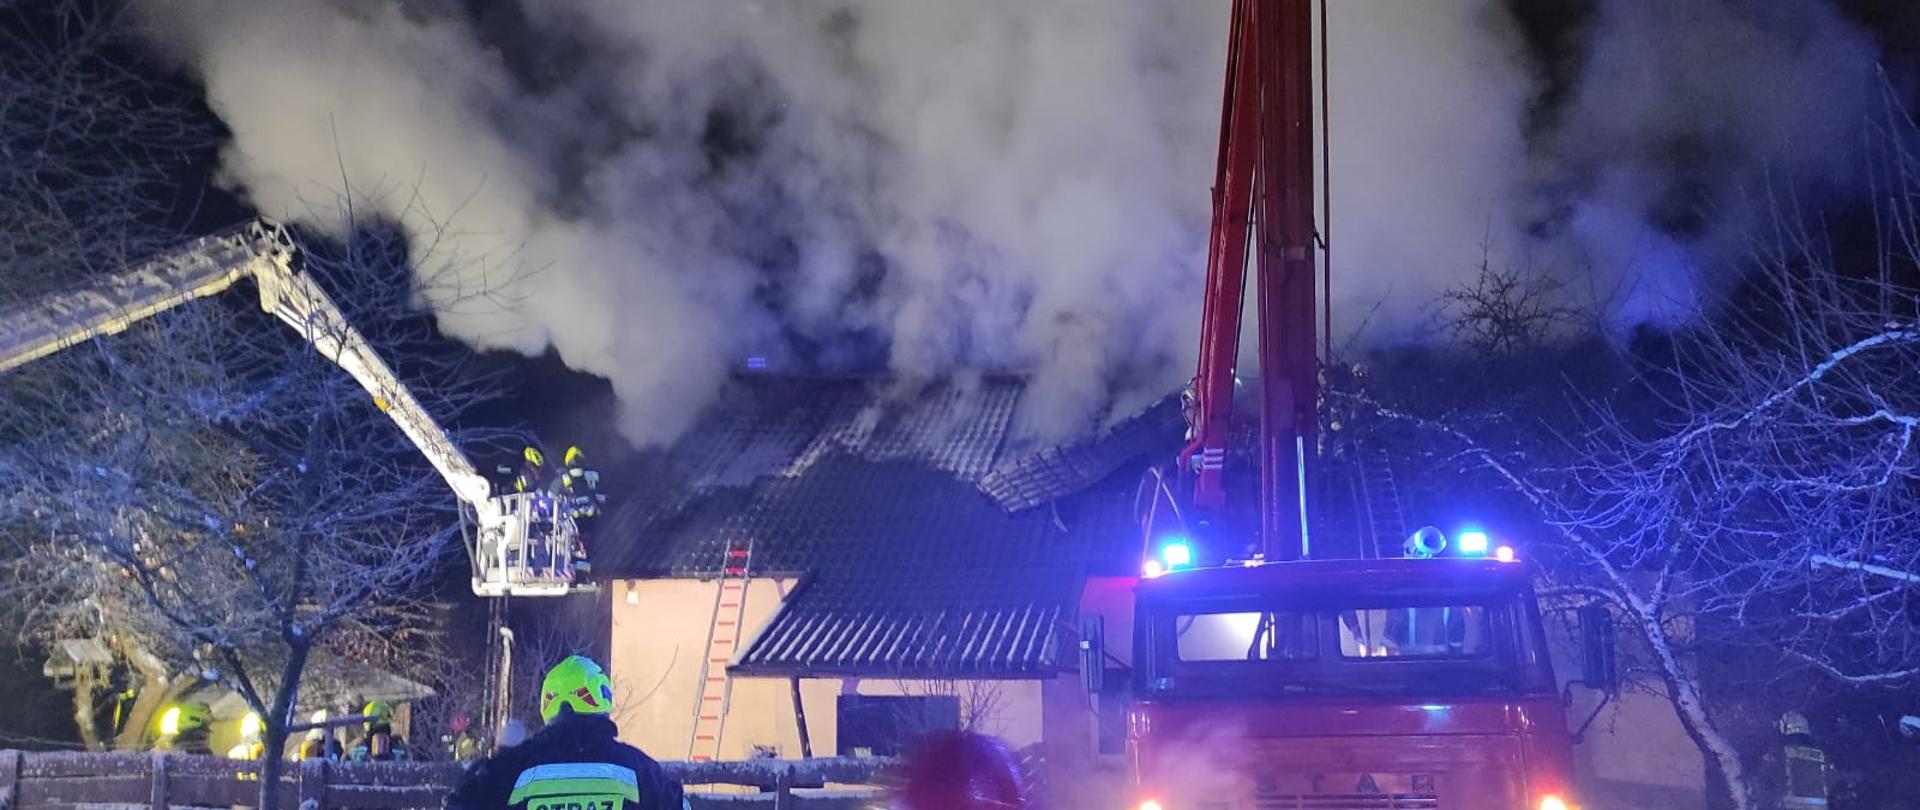 Pożar budynku mieszkalnego w miejscowości Wrzesina